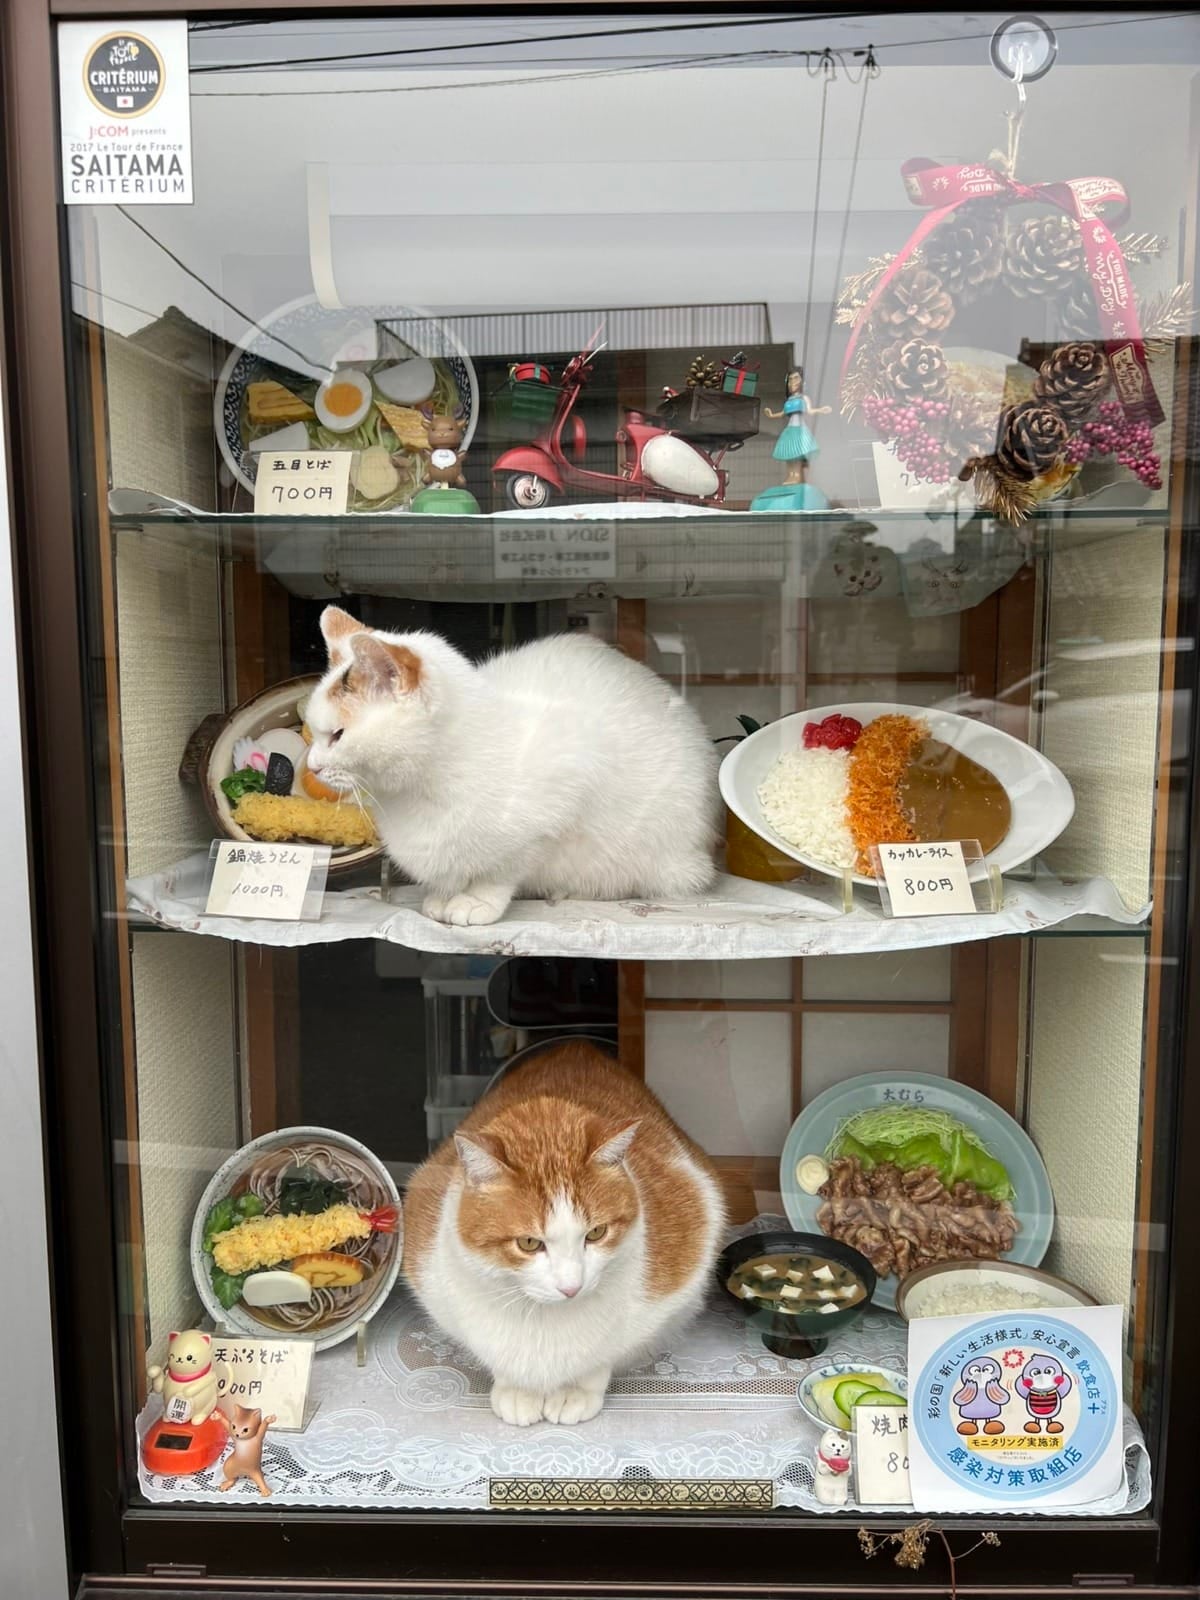 แมวกวัก ร้านโซบะญี่ปุ่น